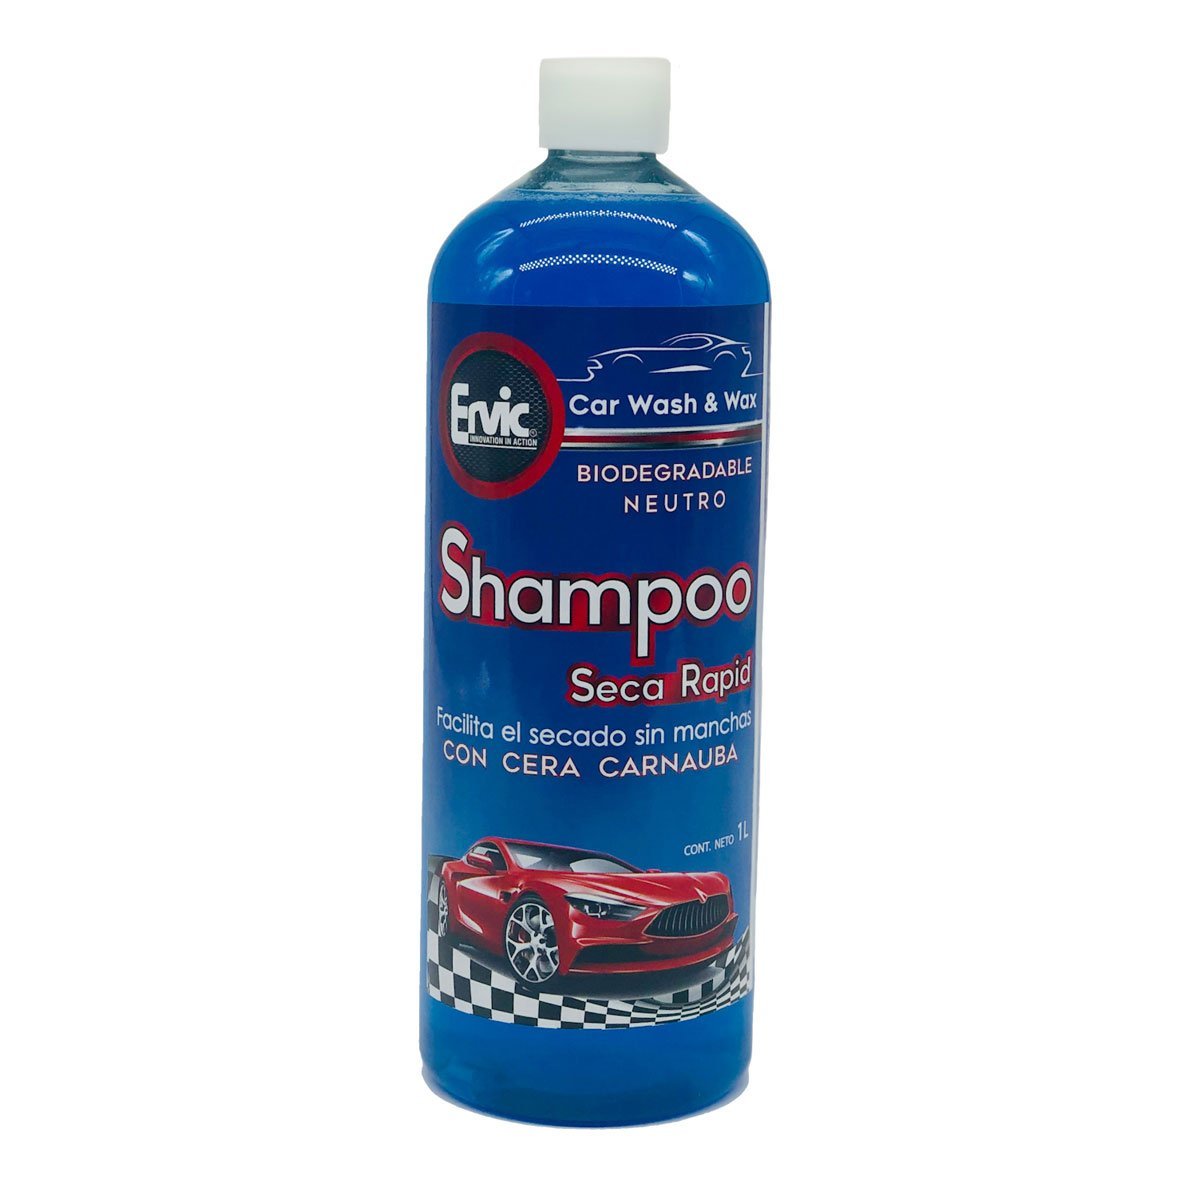 Cera y Shampoo para Auto 1Lt Ervic